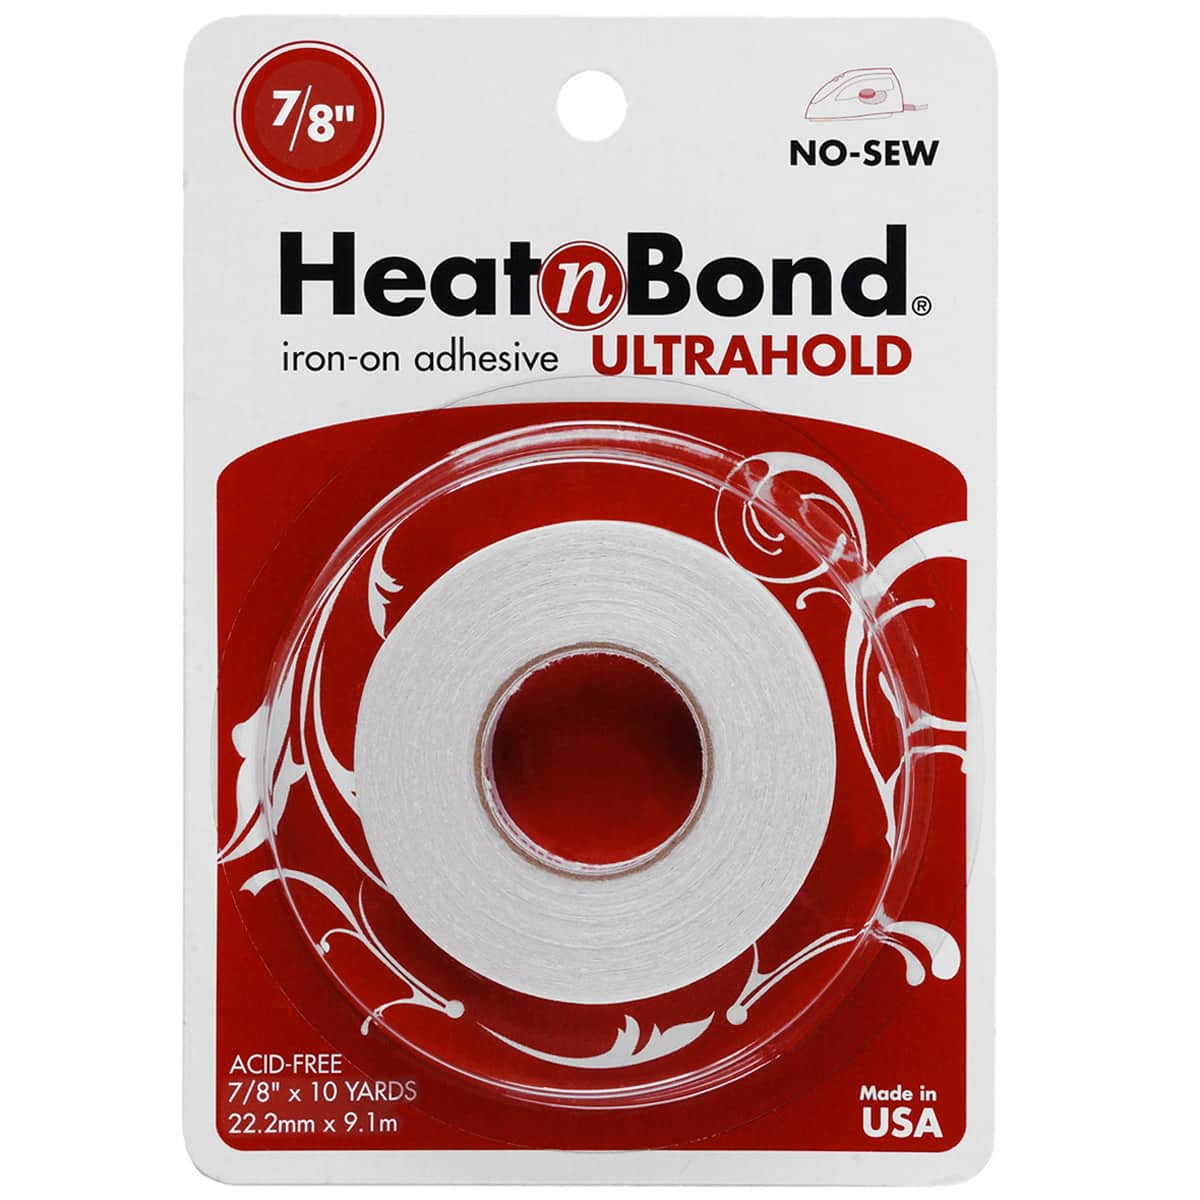 Heat n Bond Ultrahold Iron-On Adhesive